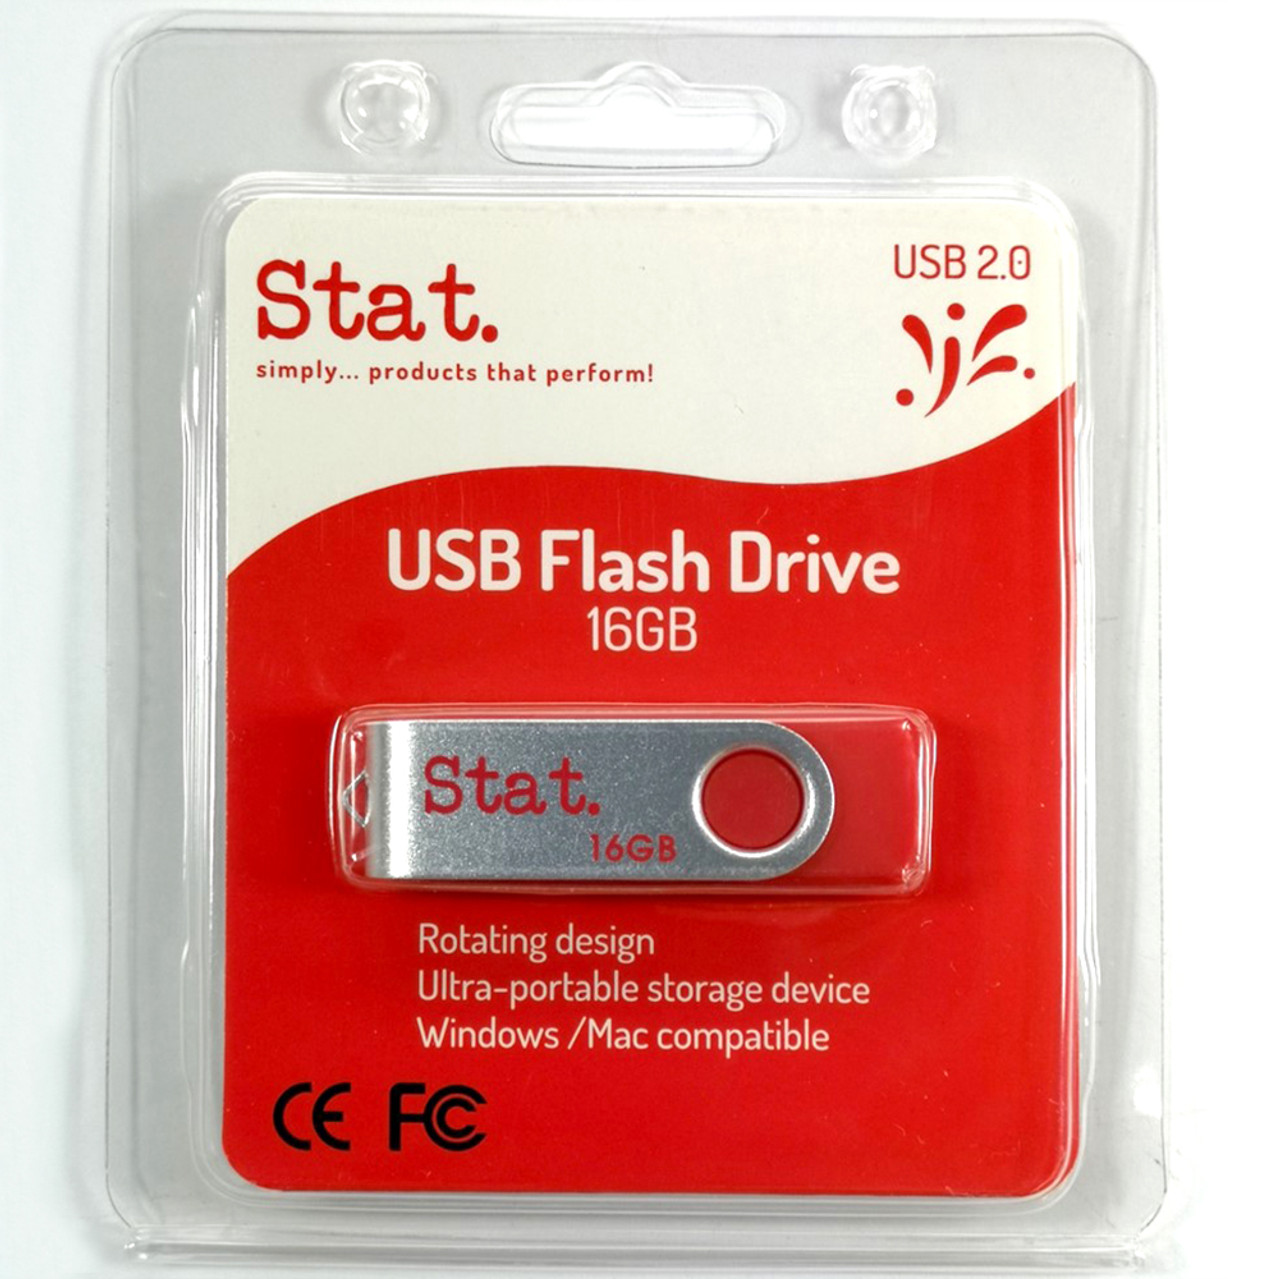 16GB PinStripe USB Flash Drive – Black: Everyday USB Drives - USB